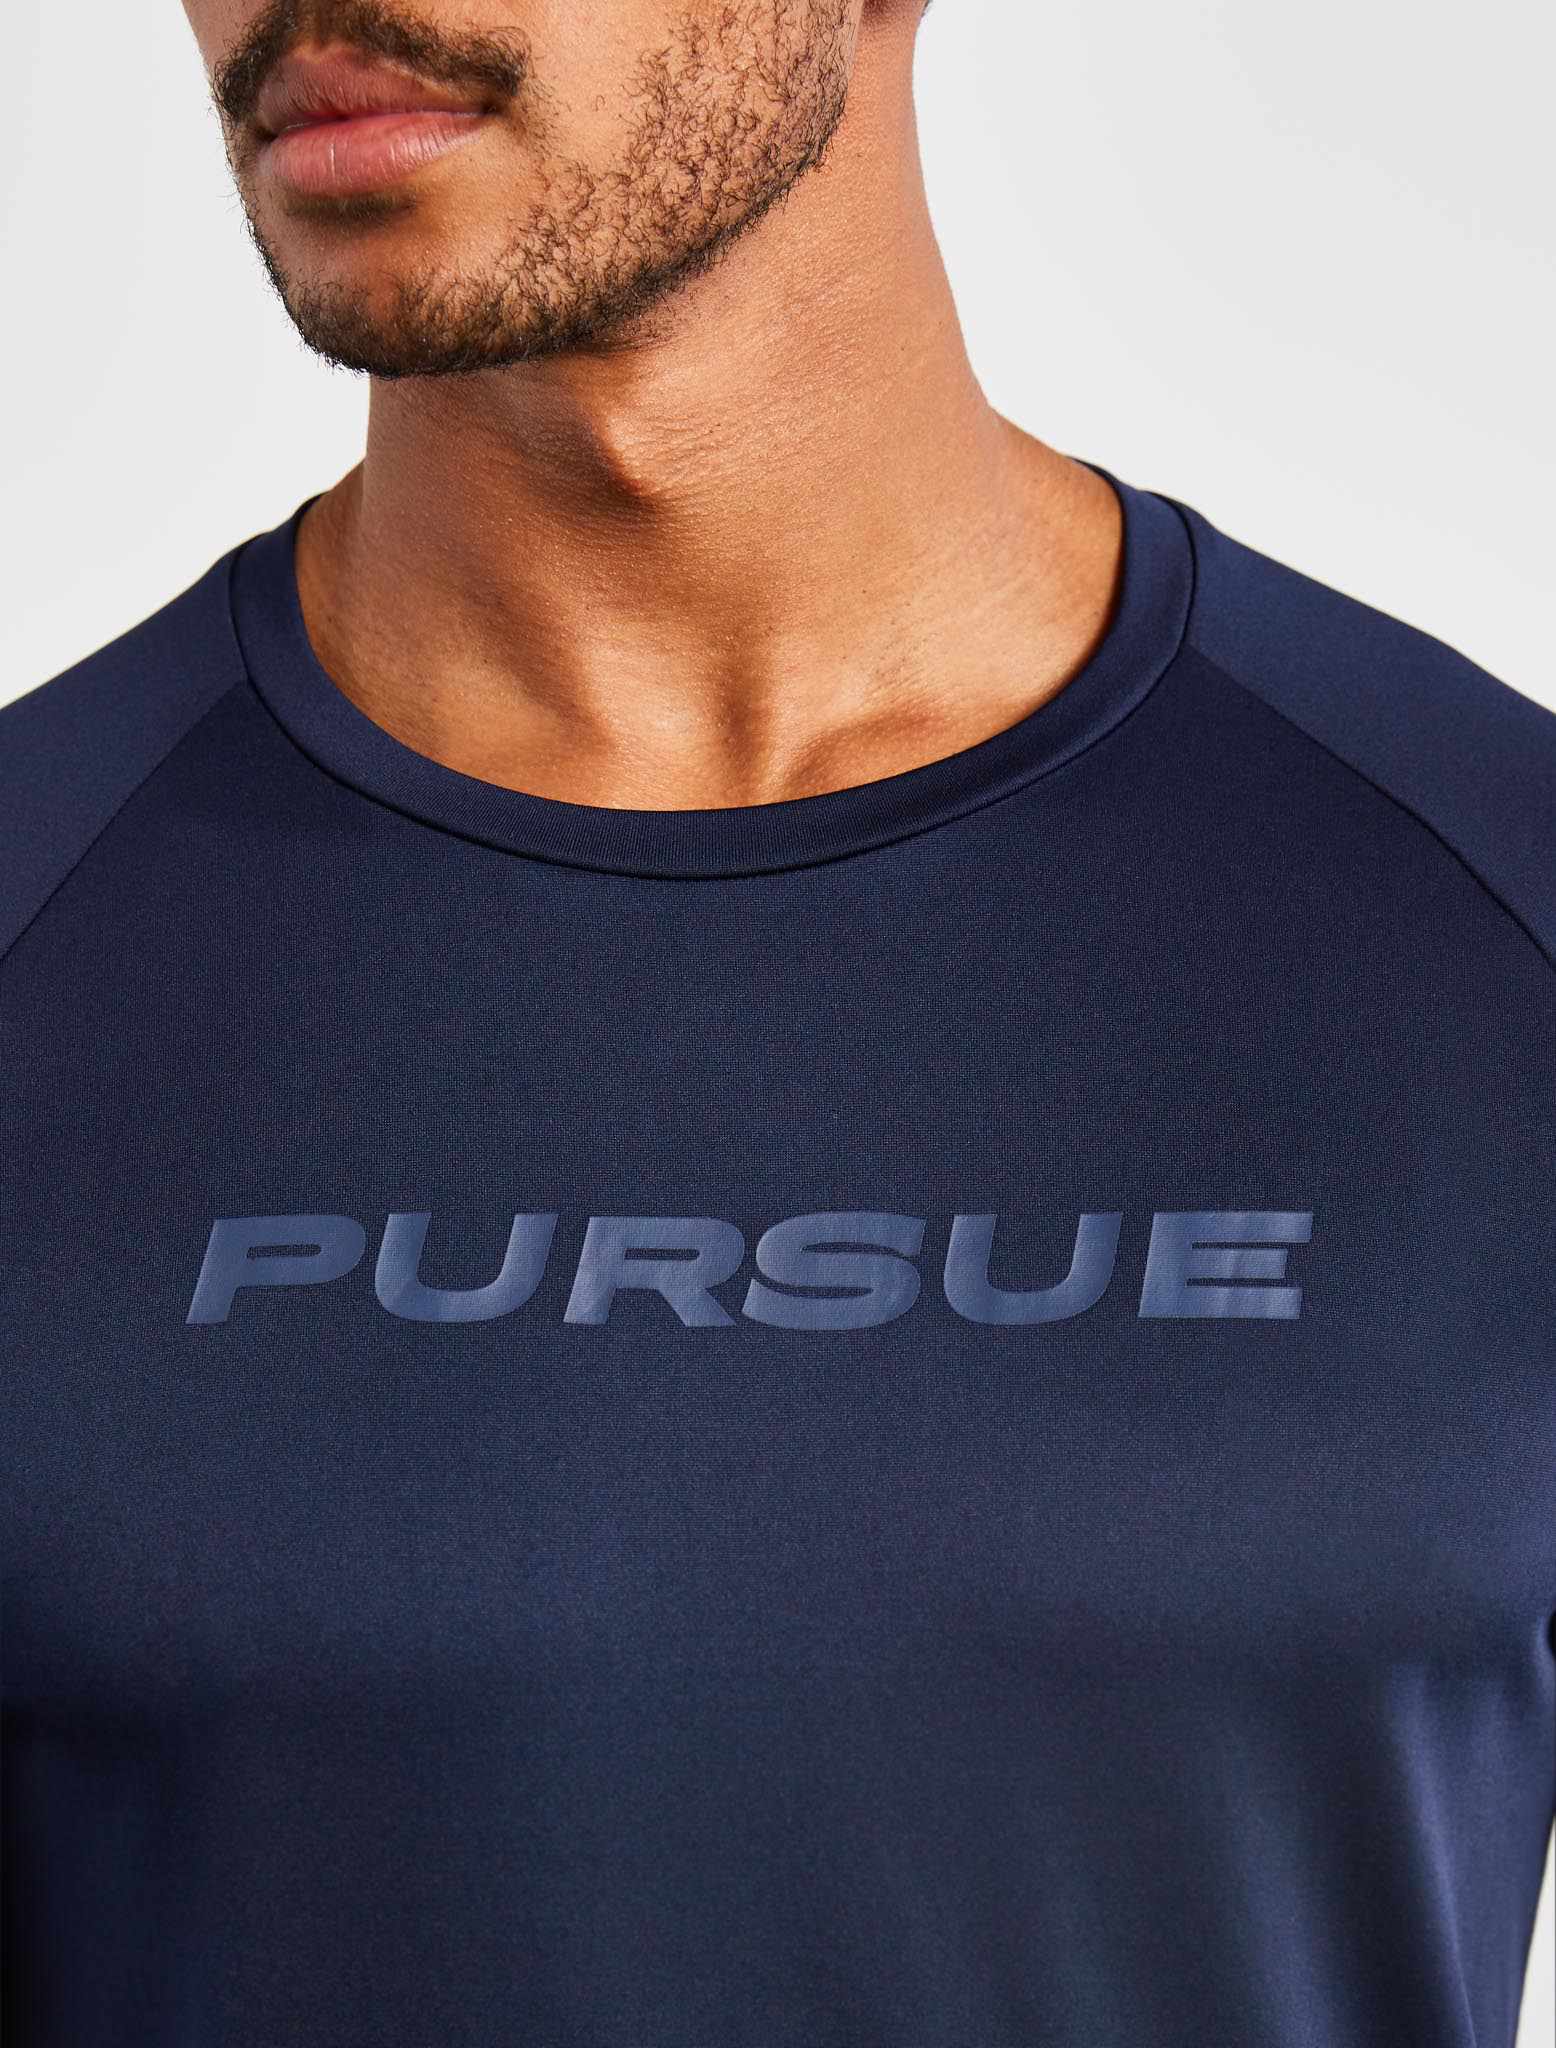 Statement T-Shirt / Navy Pursue Fitness 2